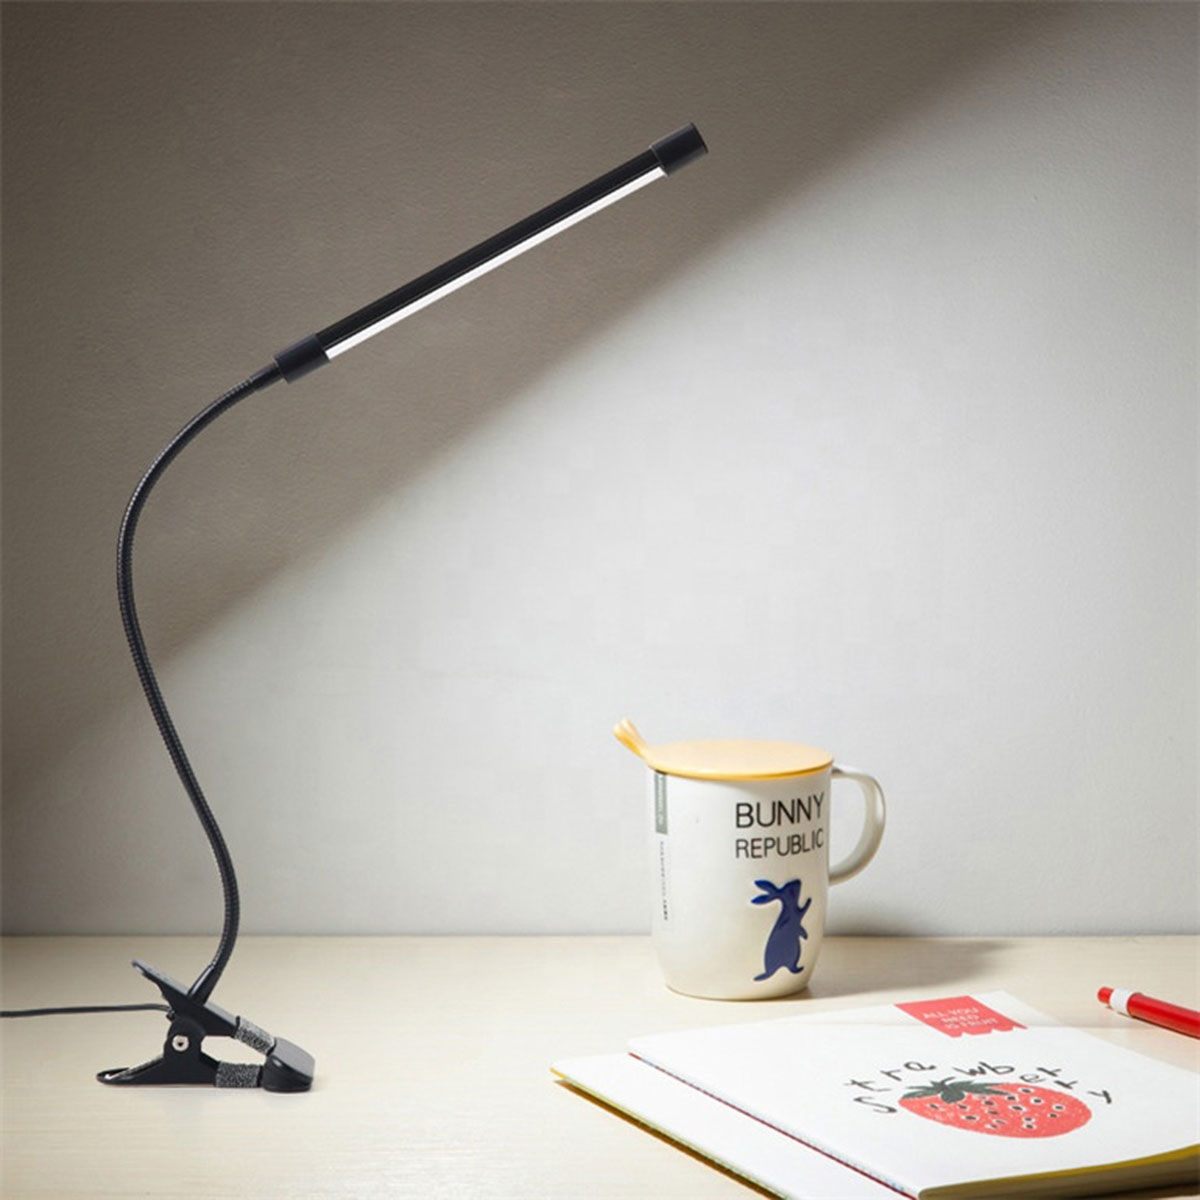 Lampka LED na biurko z klipsem biała ZD20B